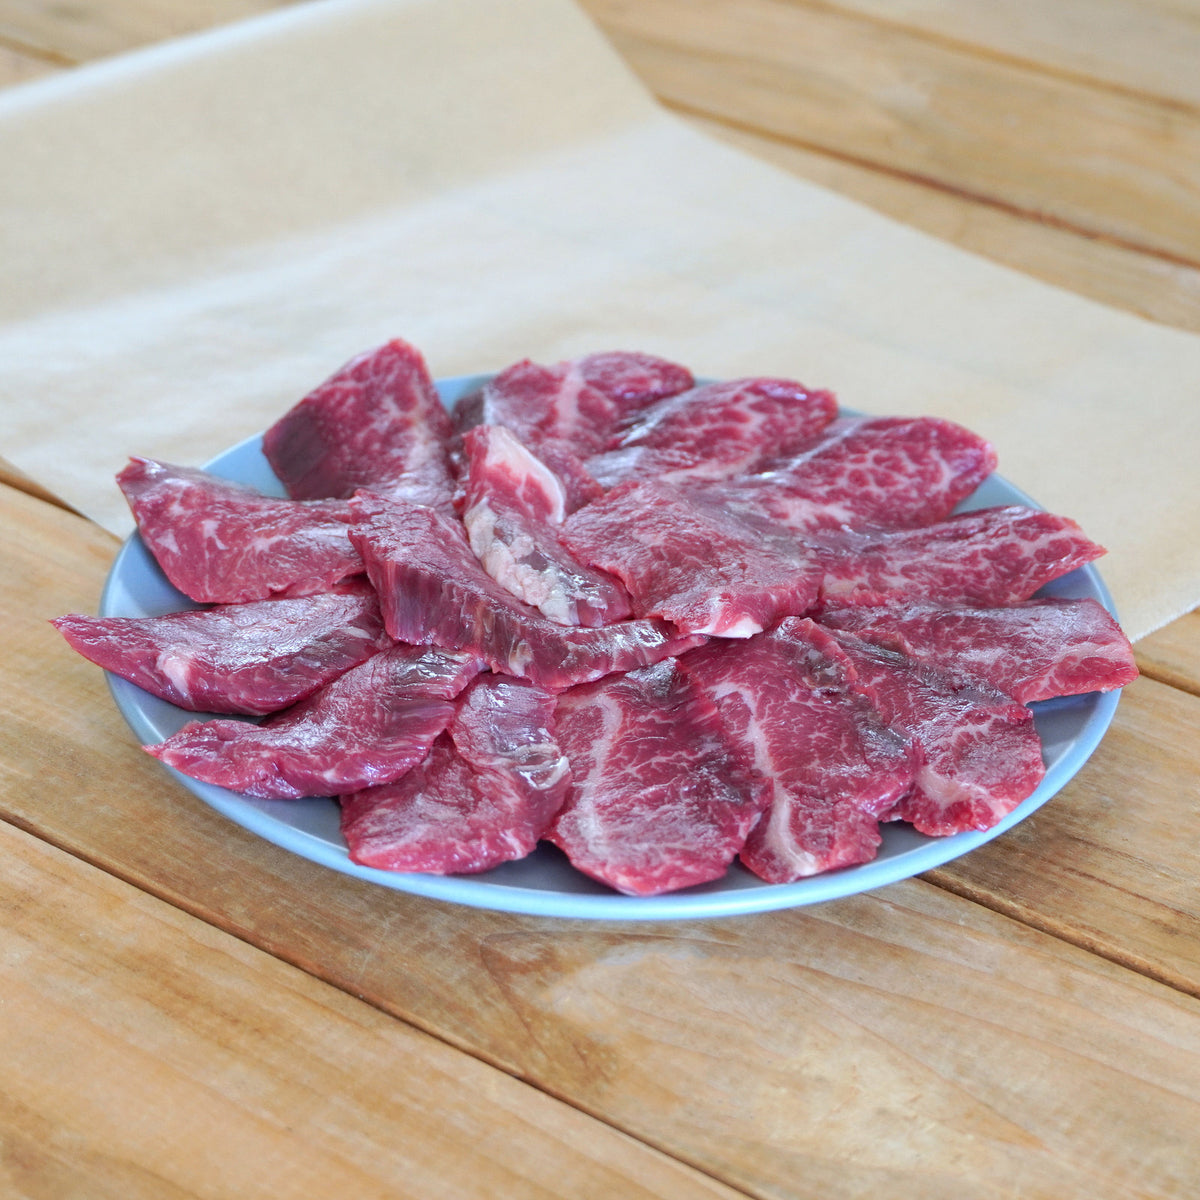 放牧 和牛 牛バラ カルビ 焼肉用 スライス 牛肉 国産 遺伝子組換え不使用 (300g) ホライズンファームズ